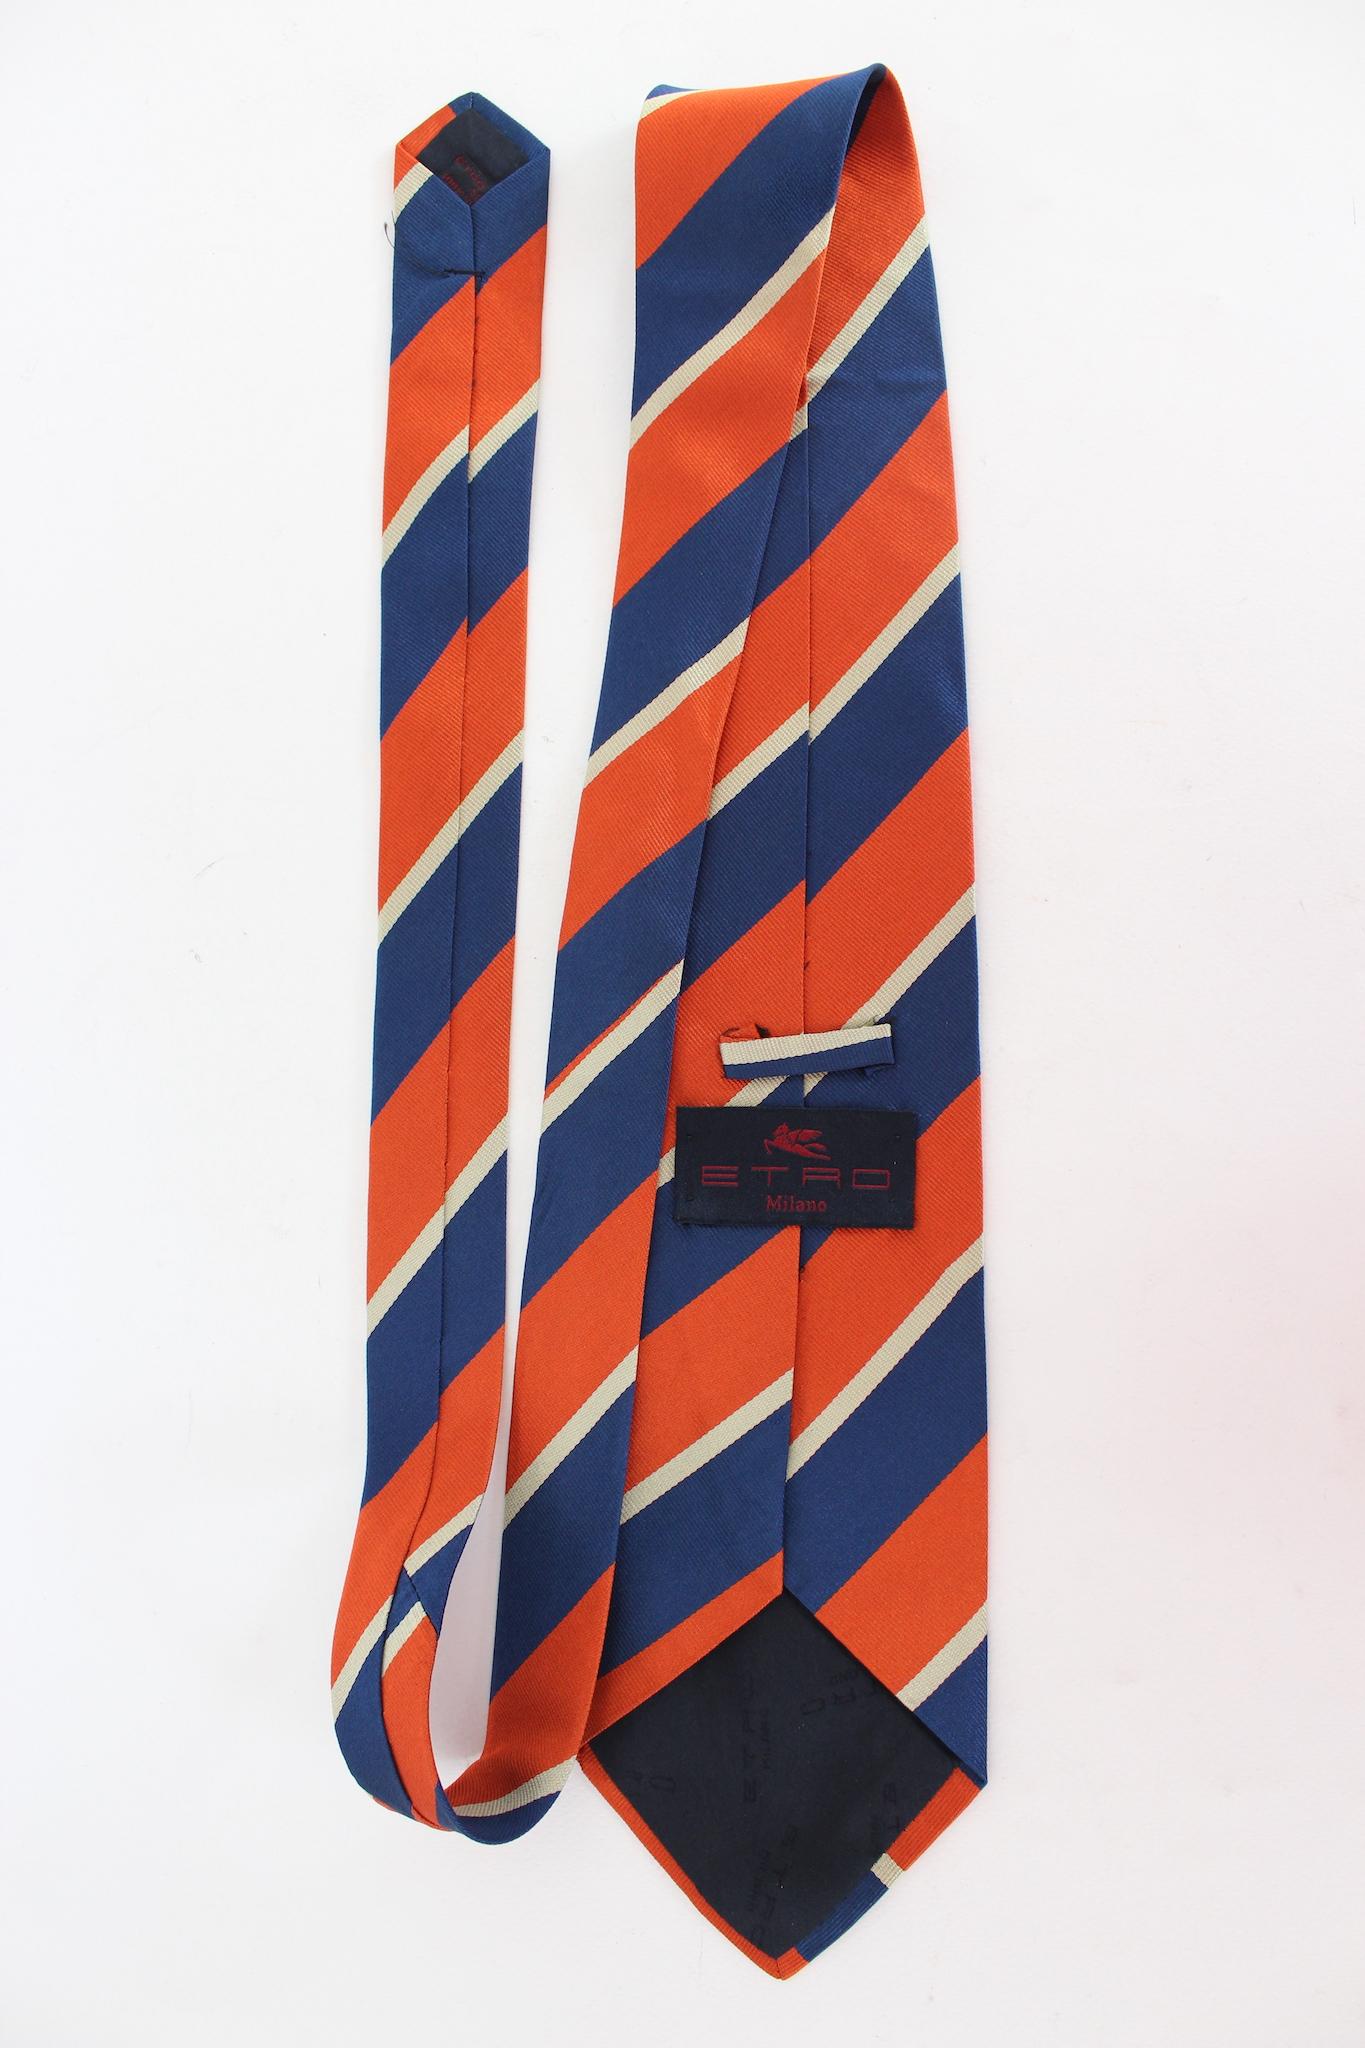 Cravate vintage Etro des années 2000. Orange et bleu, motif rayé. Tissu 100 % soie. Fabriquées en Italie.

Longueur : 143 cm
Largeur : 10 cm